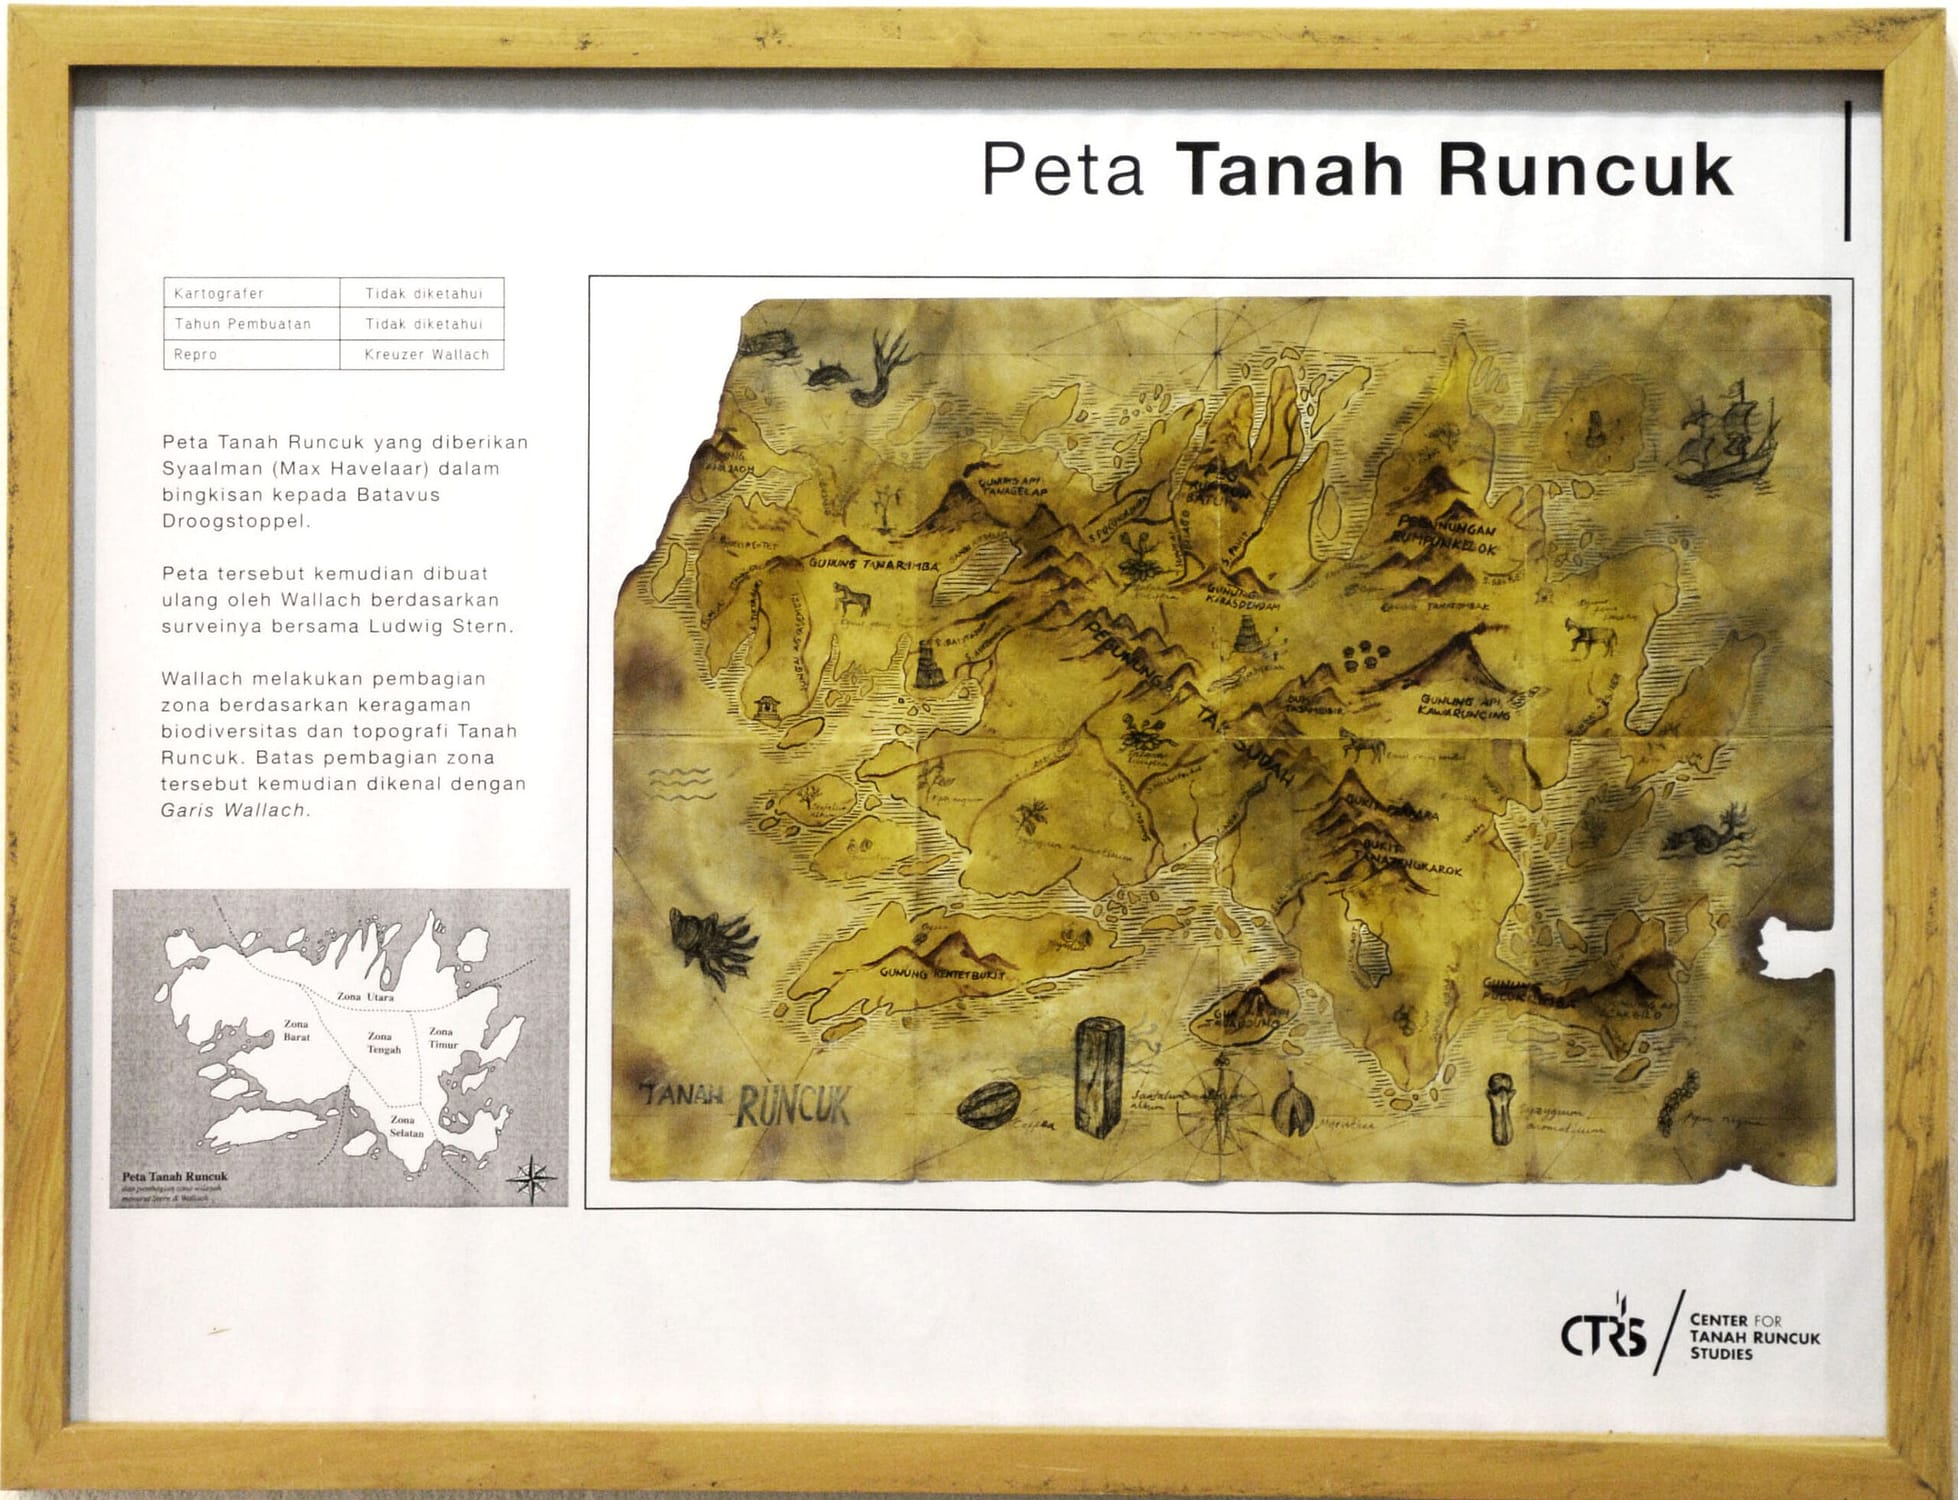 Peta Tanah Runcuk (Repro by Kreuzer Wallach)